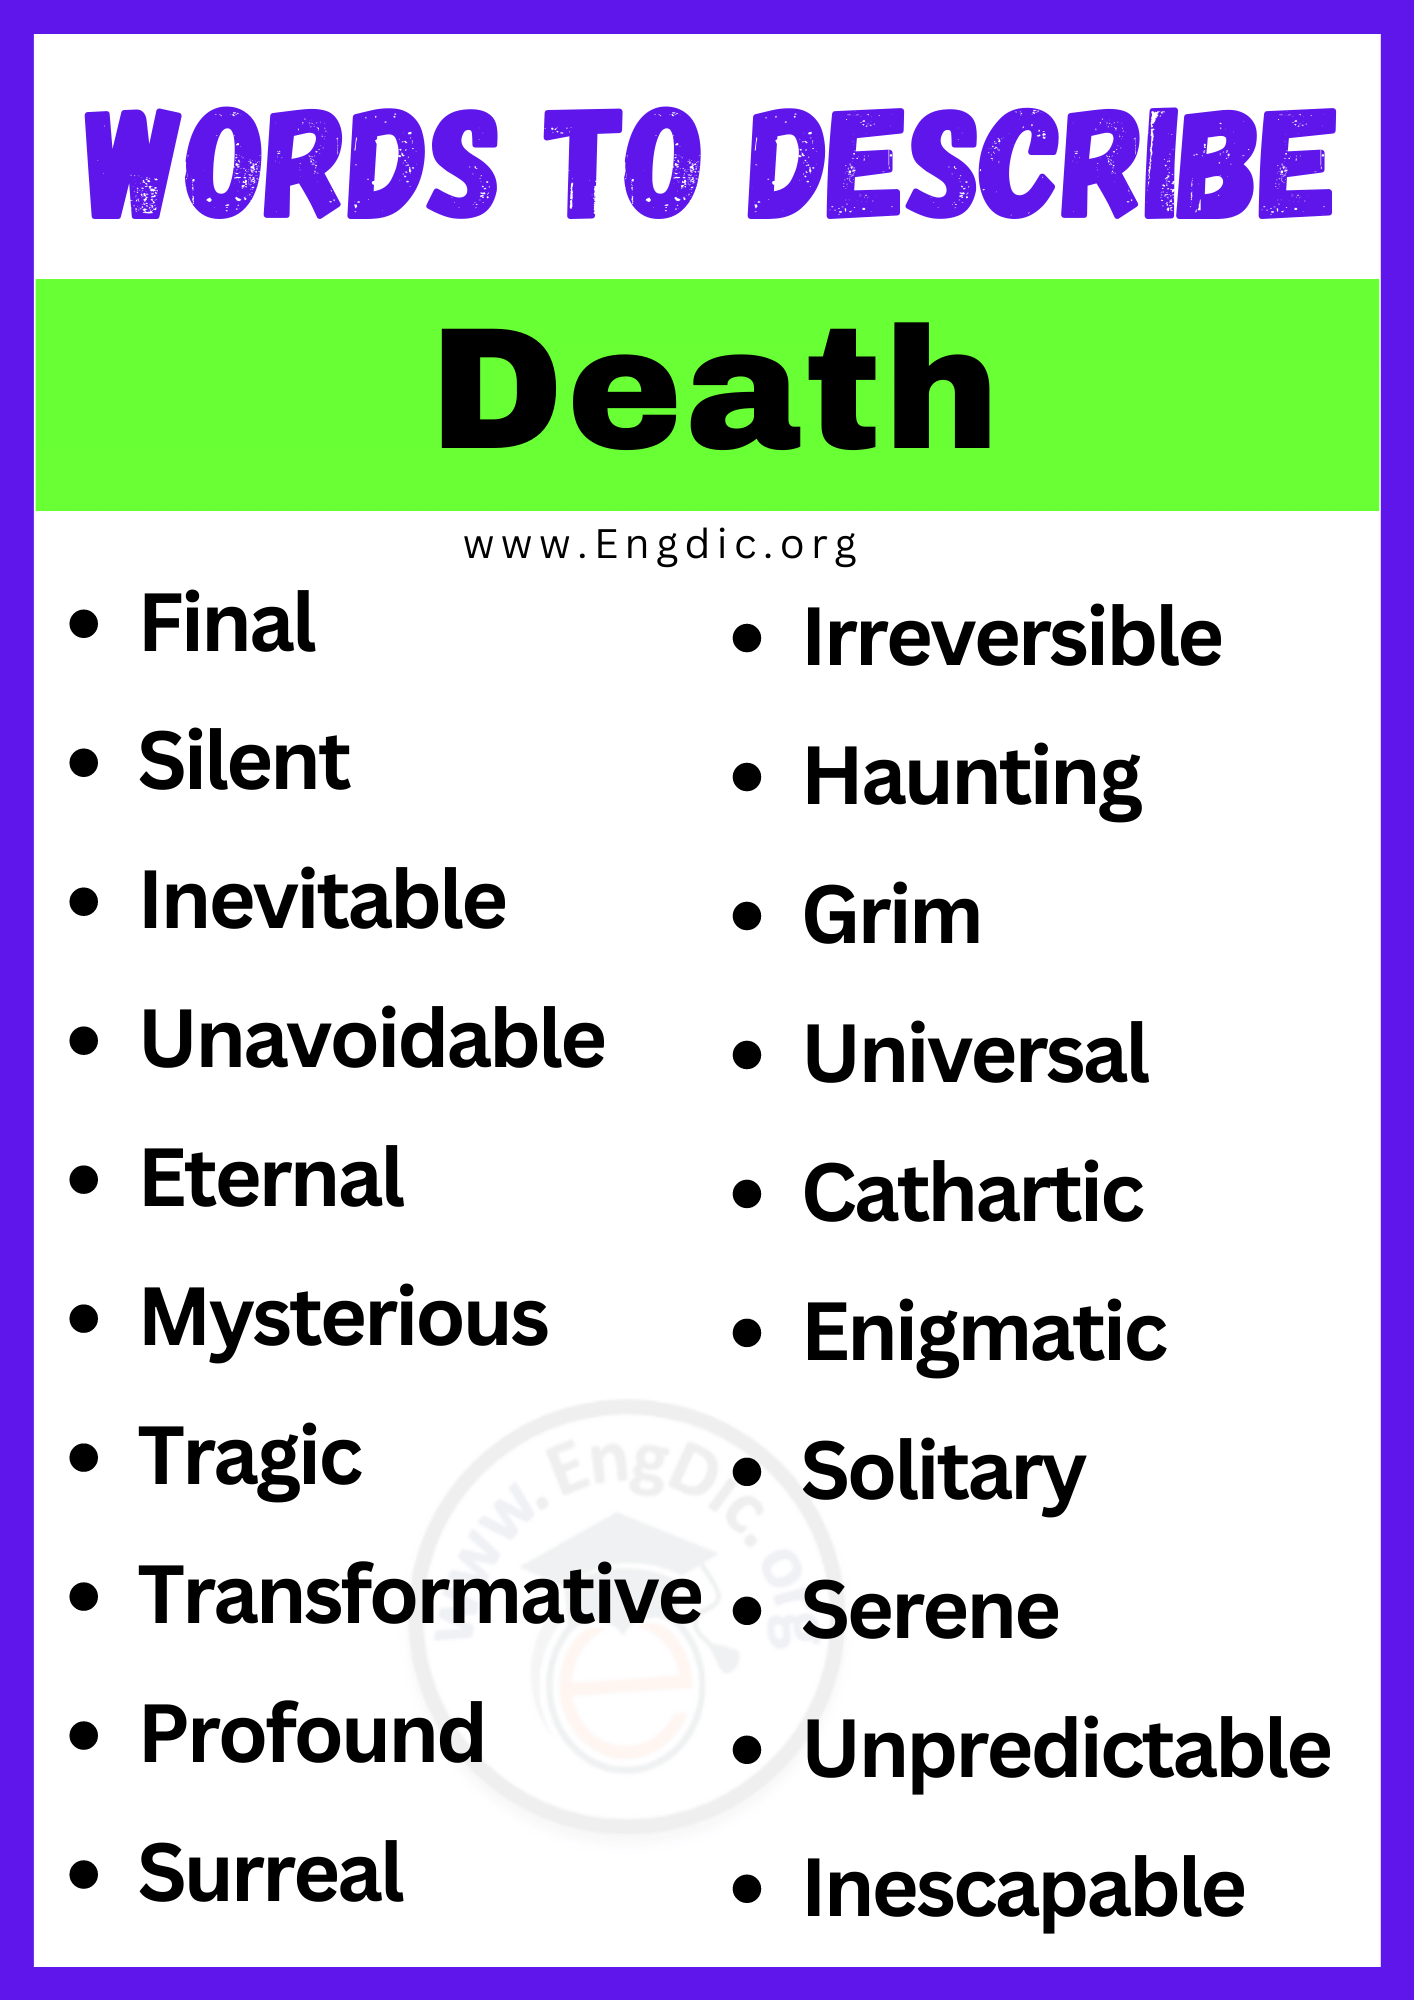 Words to Describe Death